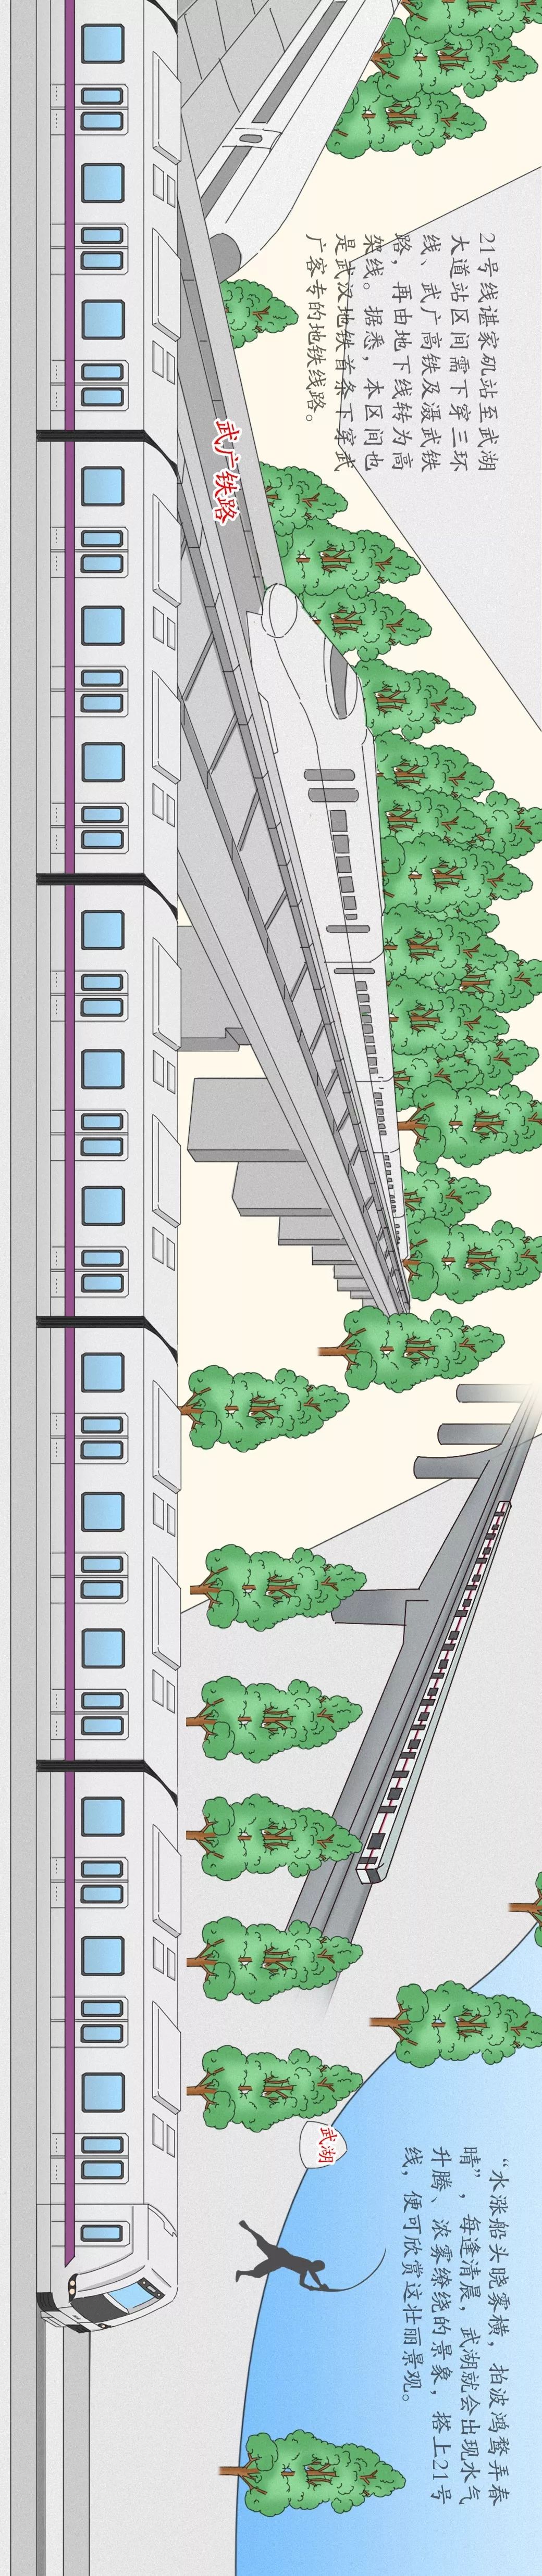 开通啦!手绘版东湖绿道二期 3条地铁,一图见证武汉的盛世美颜!